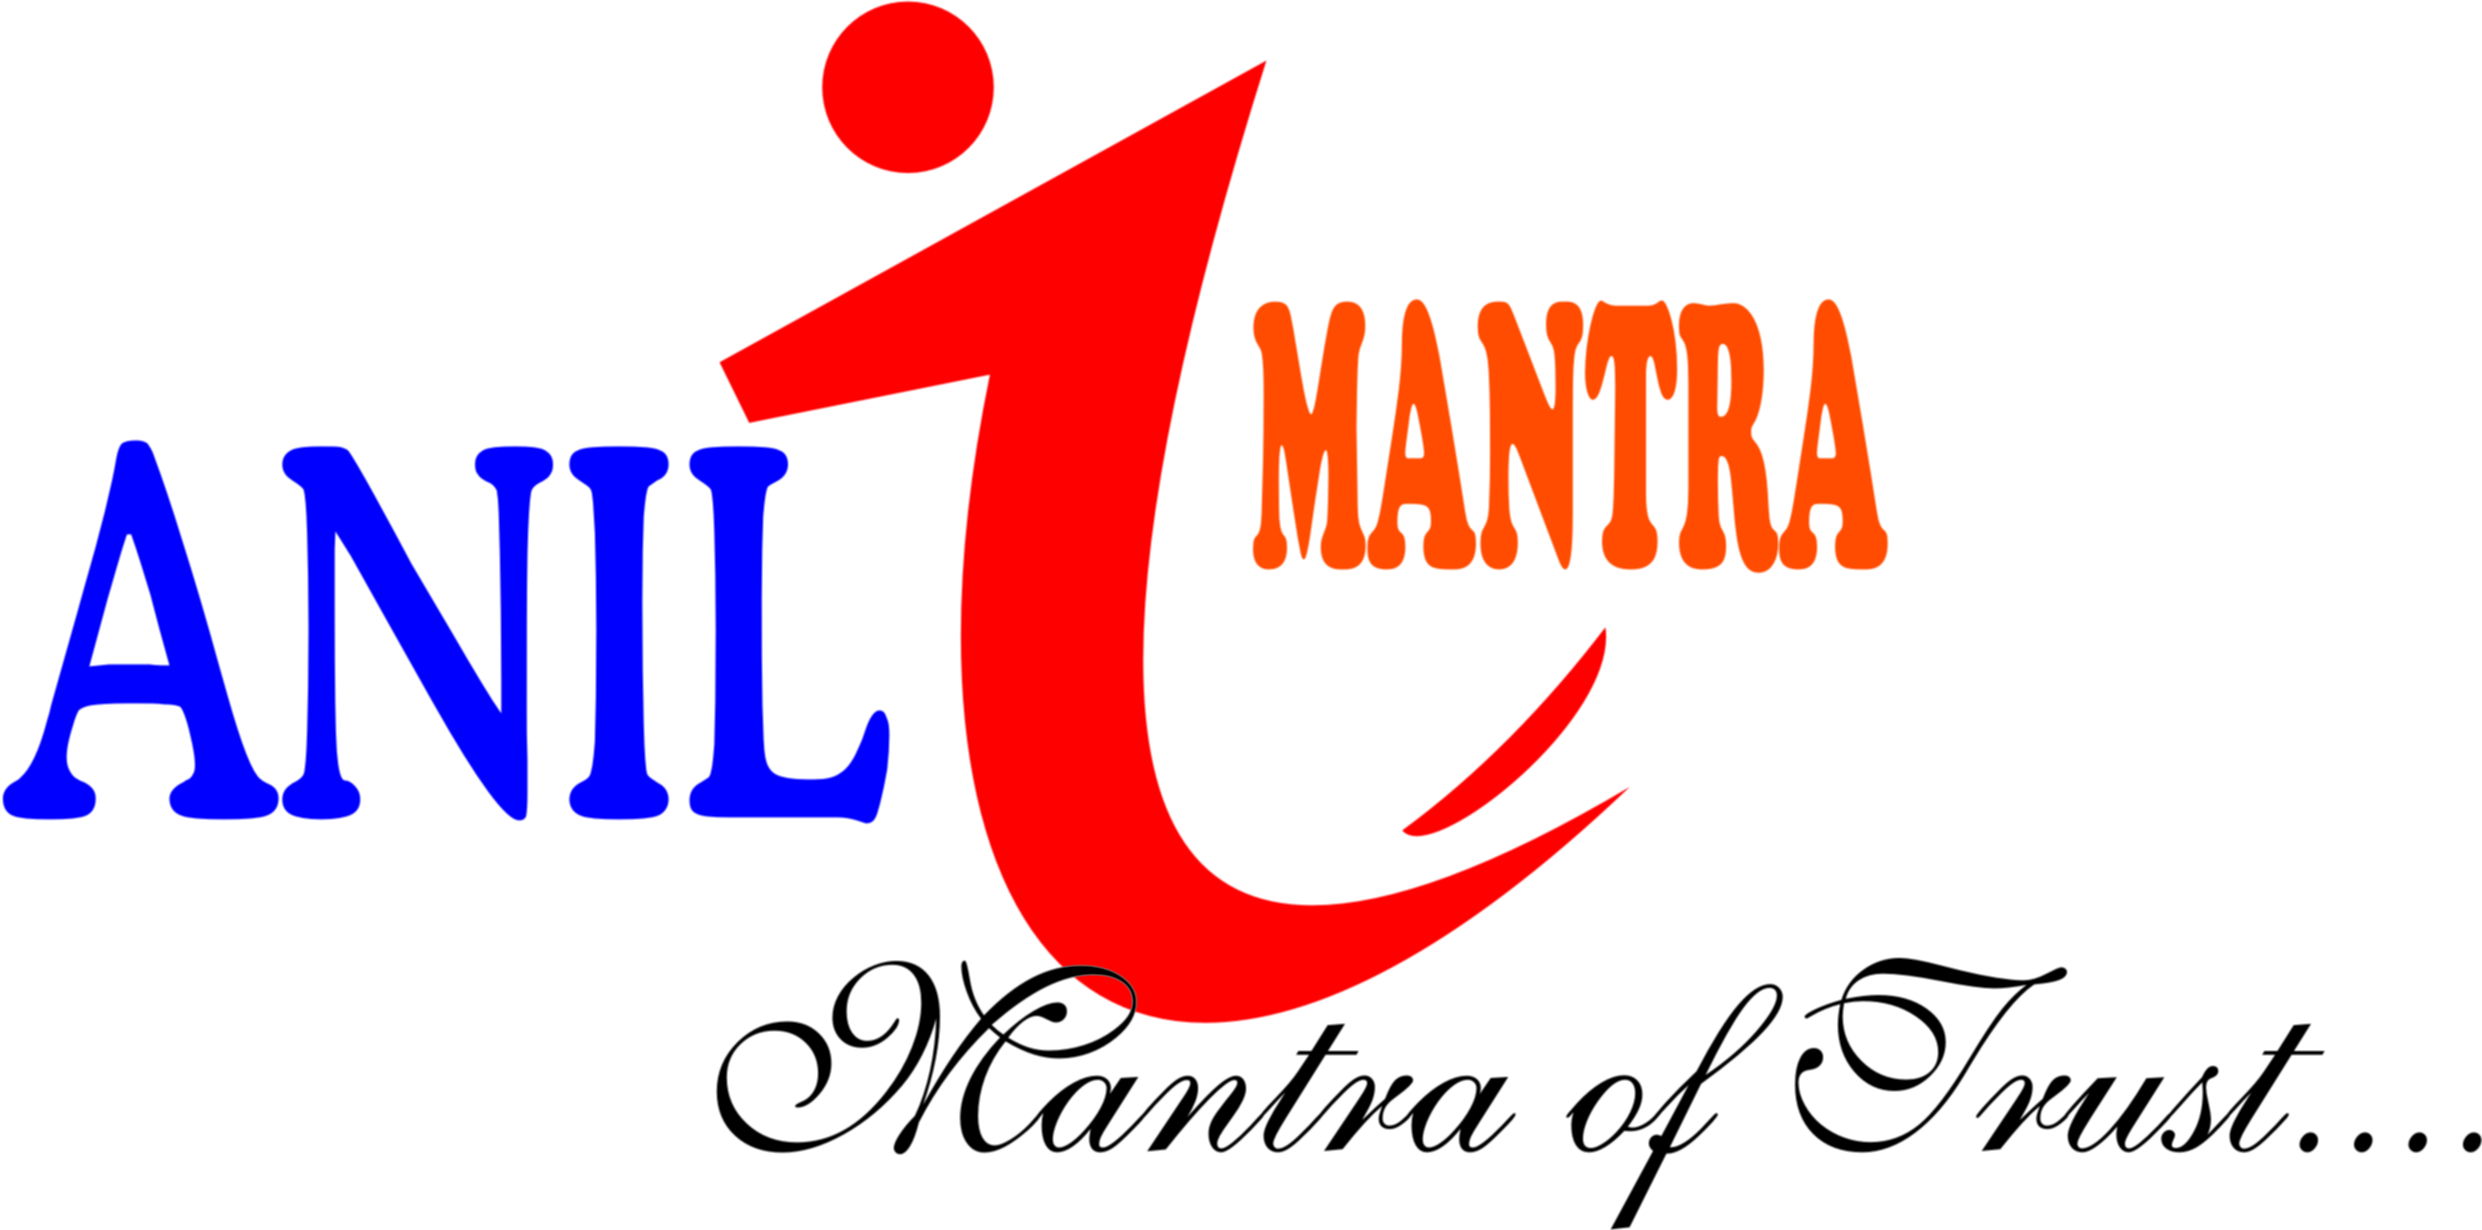 Anilmantra logo